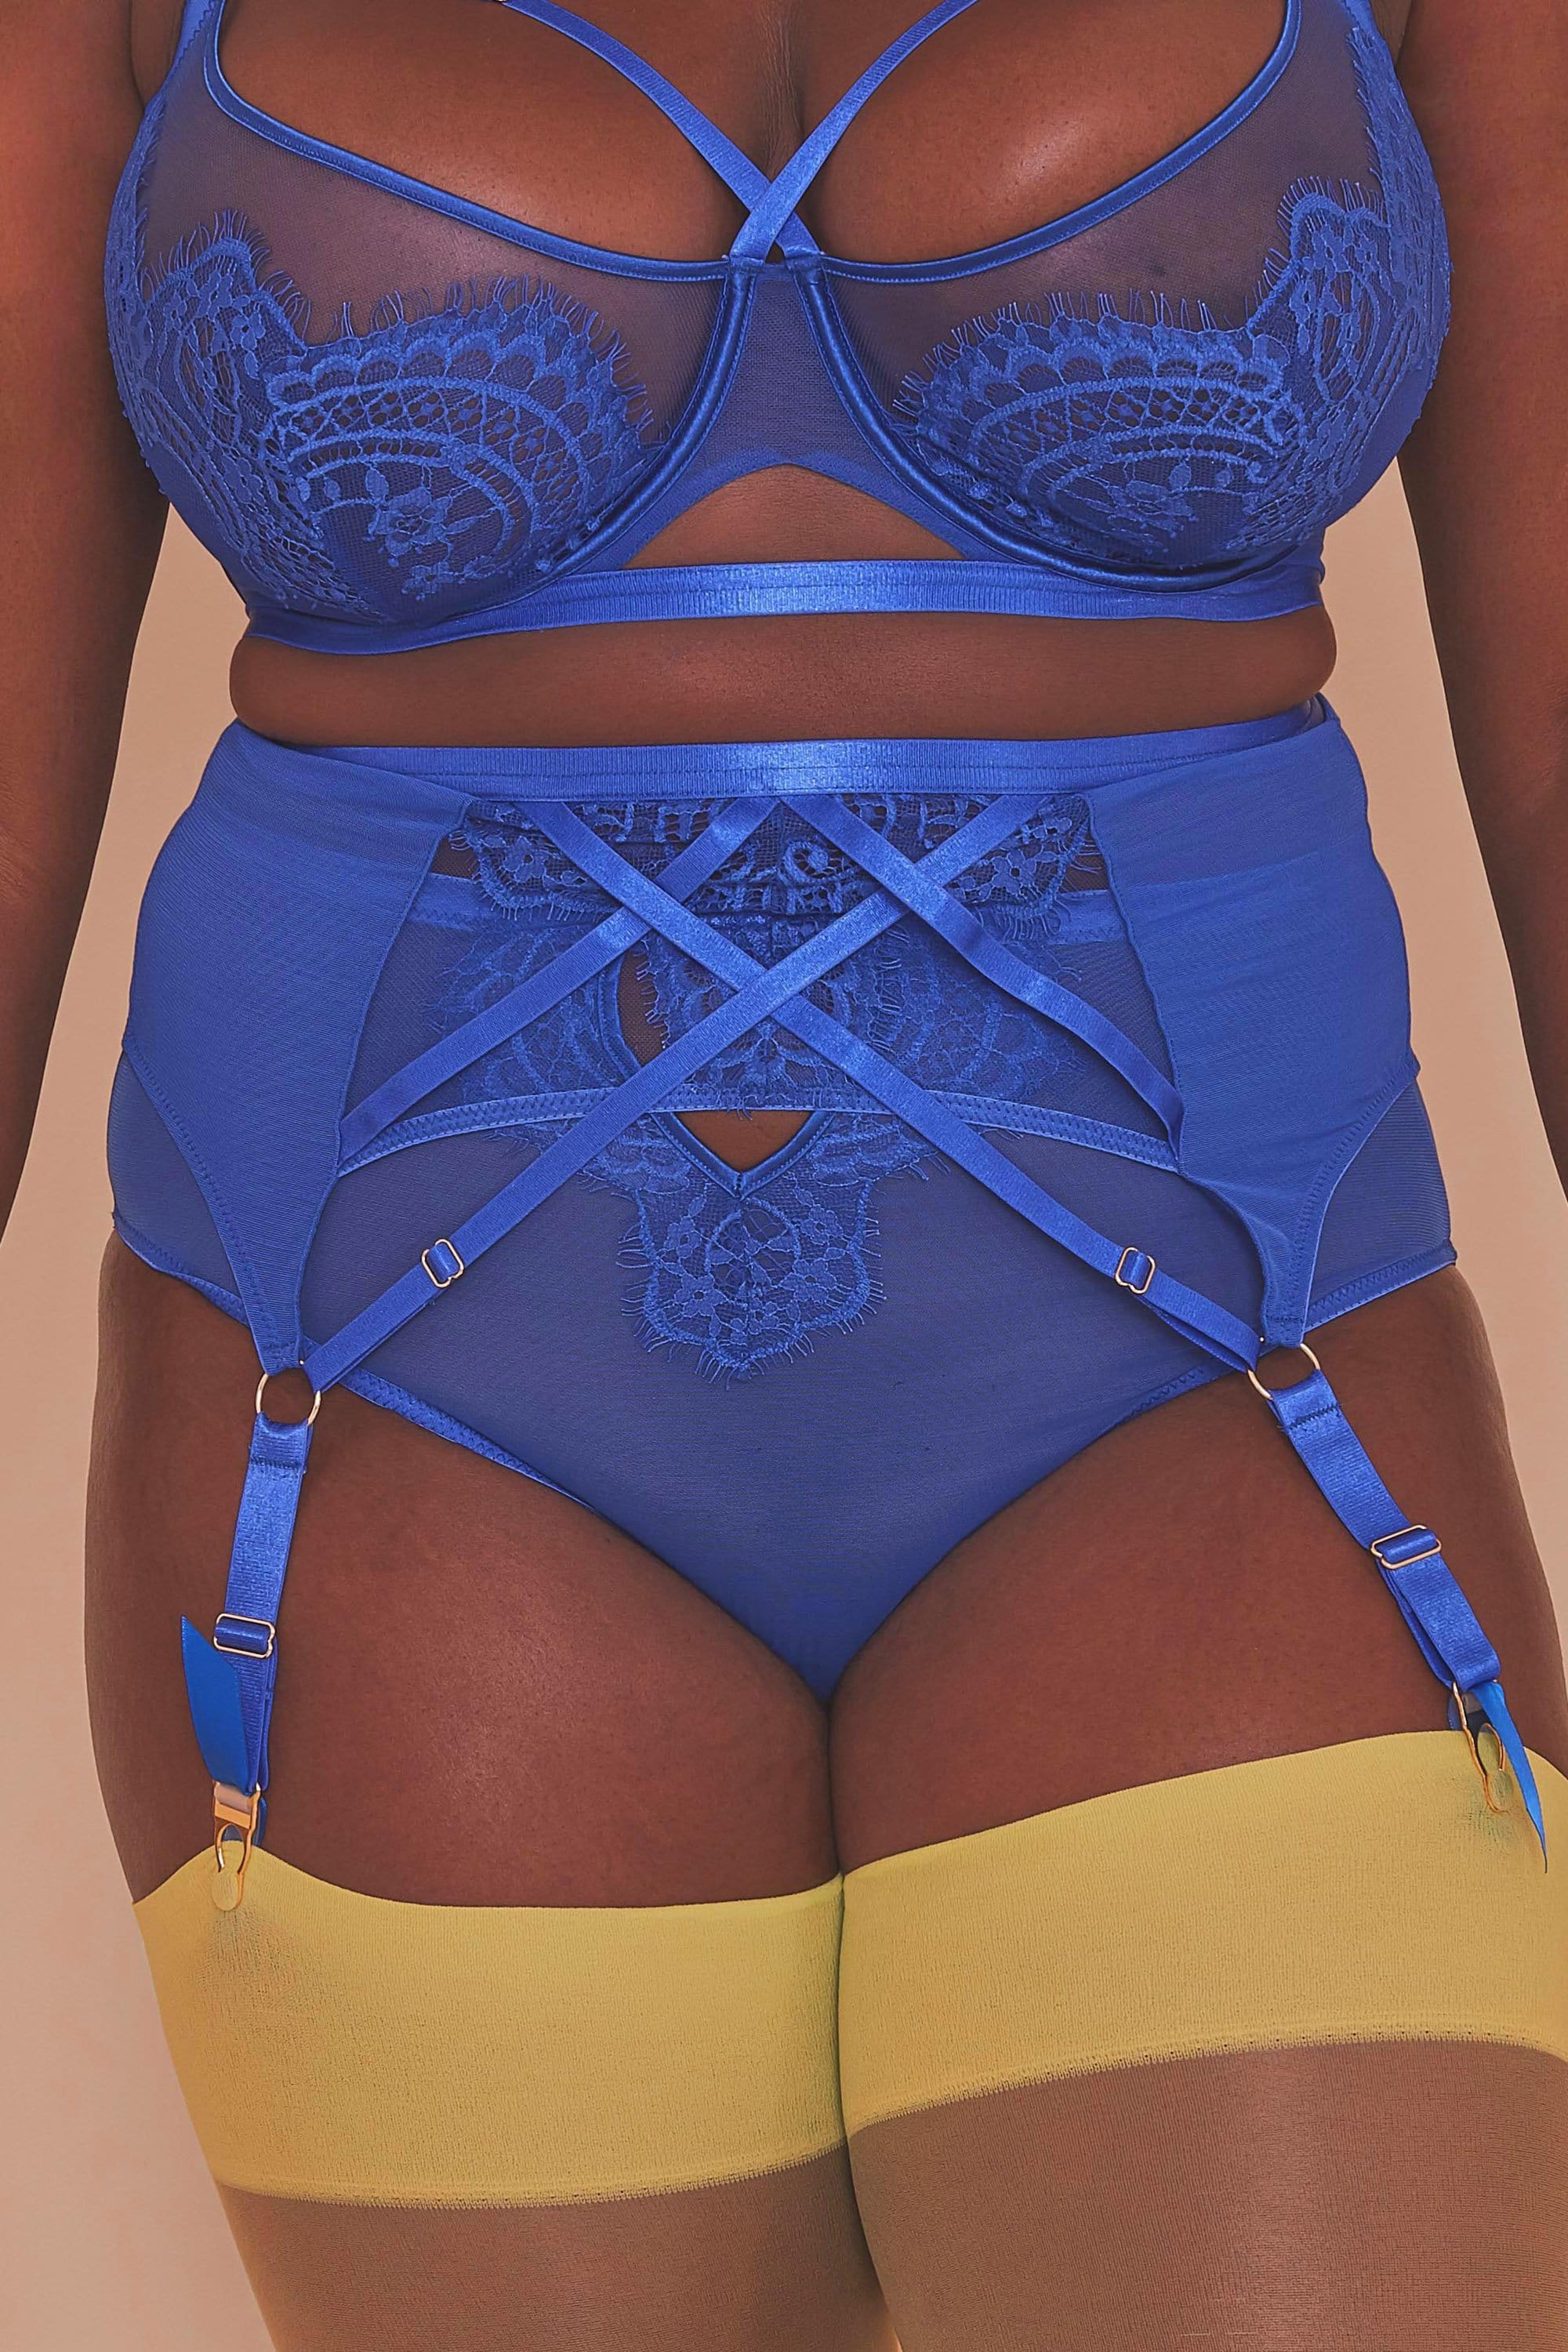 Gabi Fresh Lyla Strappy Cobalt Suspender Belt